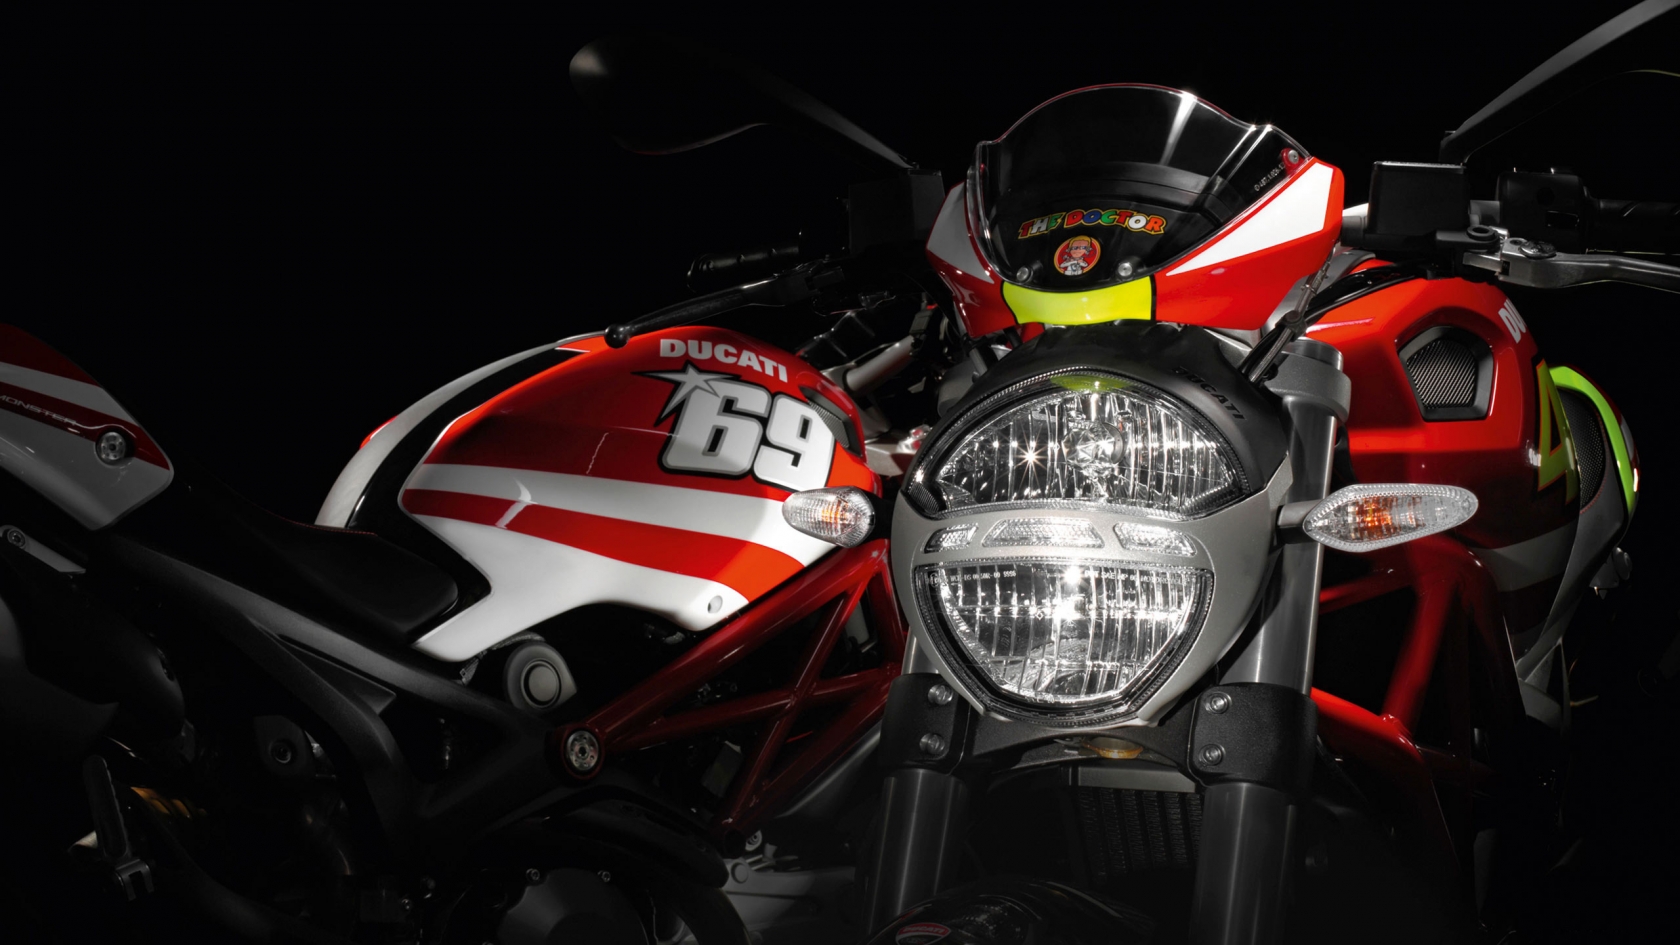 Ducati Rossi and Hayden Replica Ducati for 1680 x 945 HDTV resolution